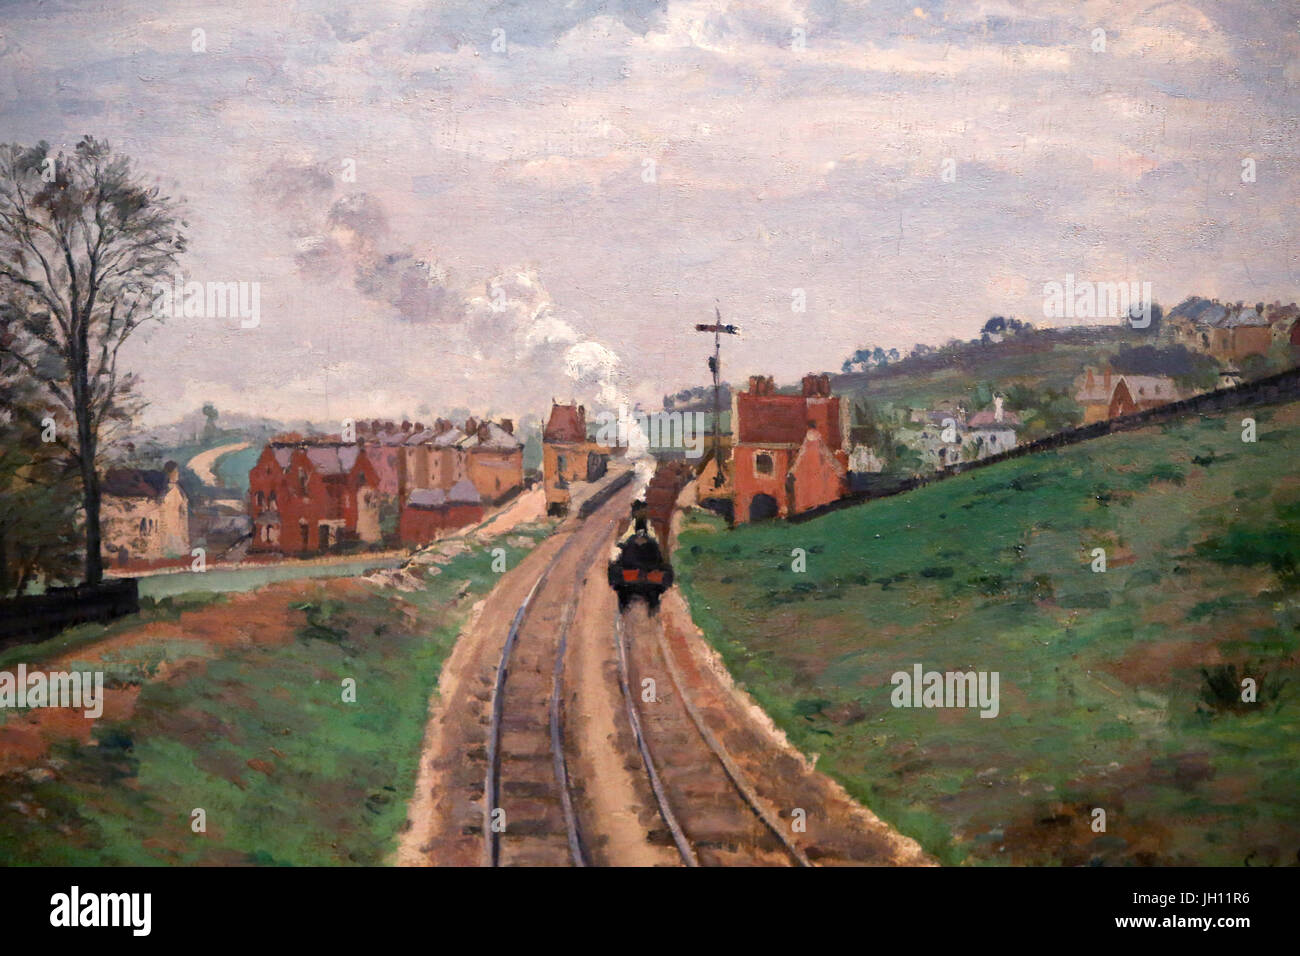 La Courtauld Gallery. Camille Pissaro. Señorío Lane, Estación de Dulwich. 1871. Óleo sobre lienzo. Reino Unido. Foto de stock